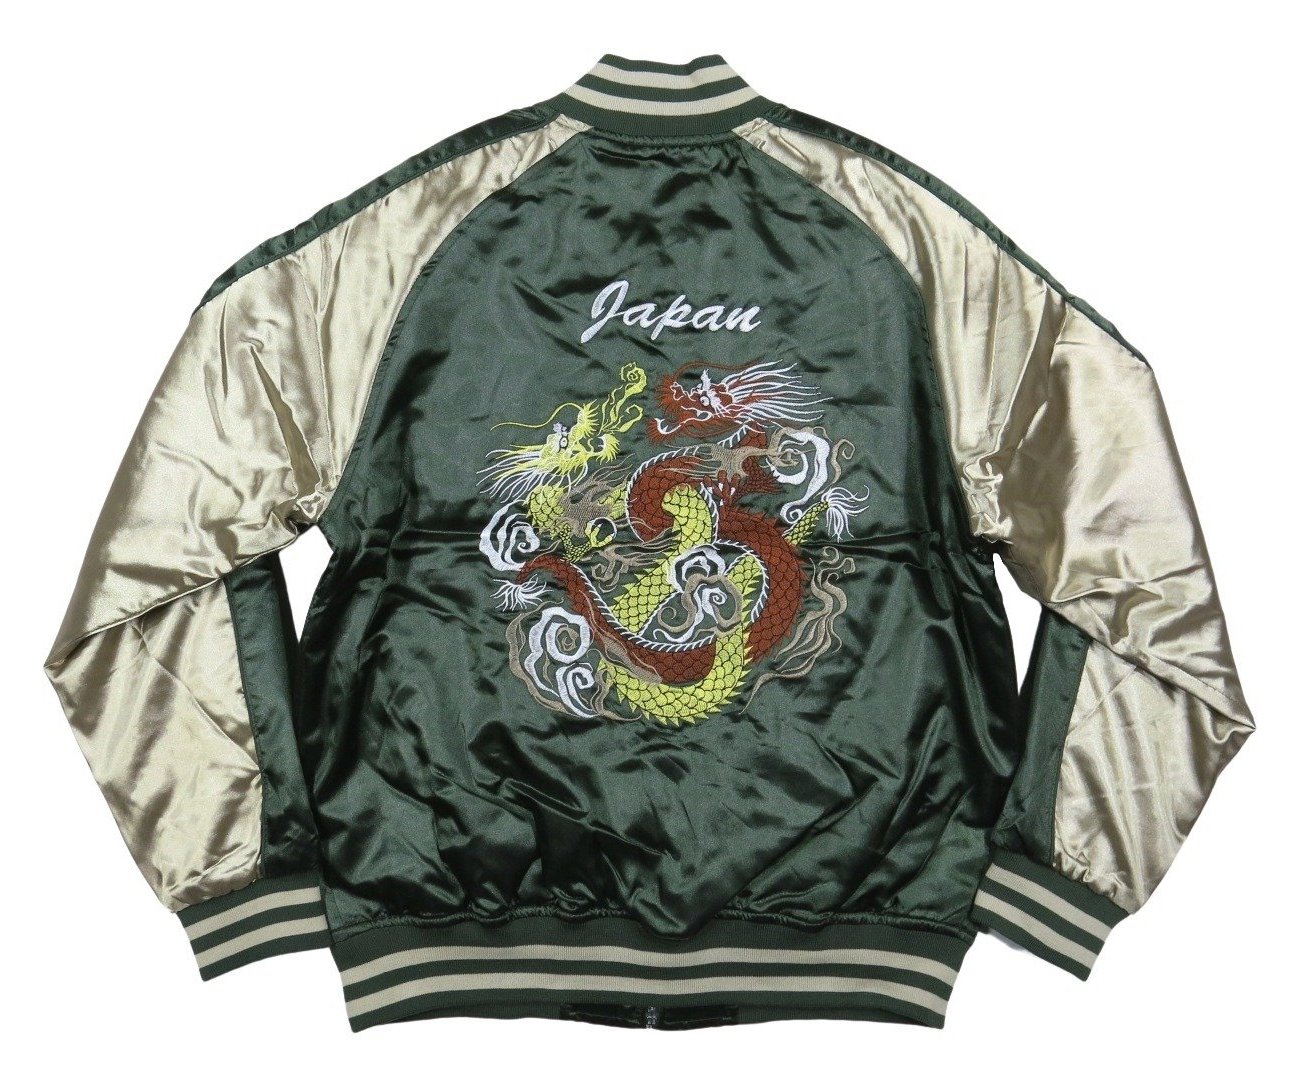 . дракон общий вышивка атлас земля с хлопком мир рисунок Japanese sovenir jacket мужской 